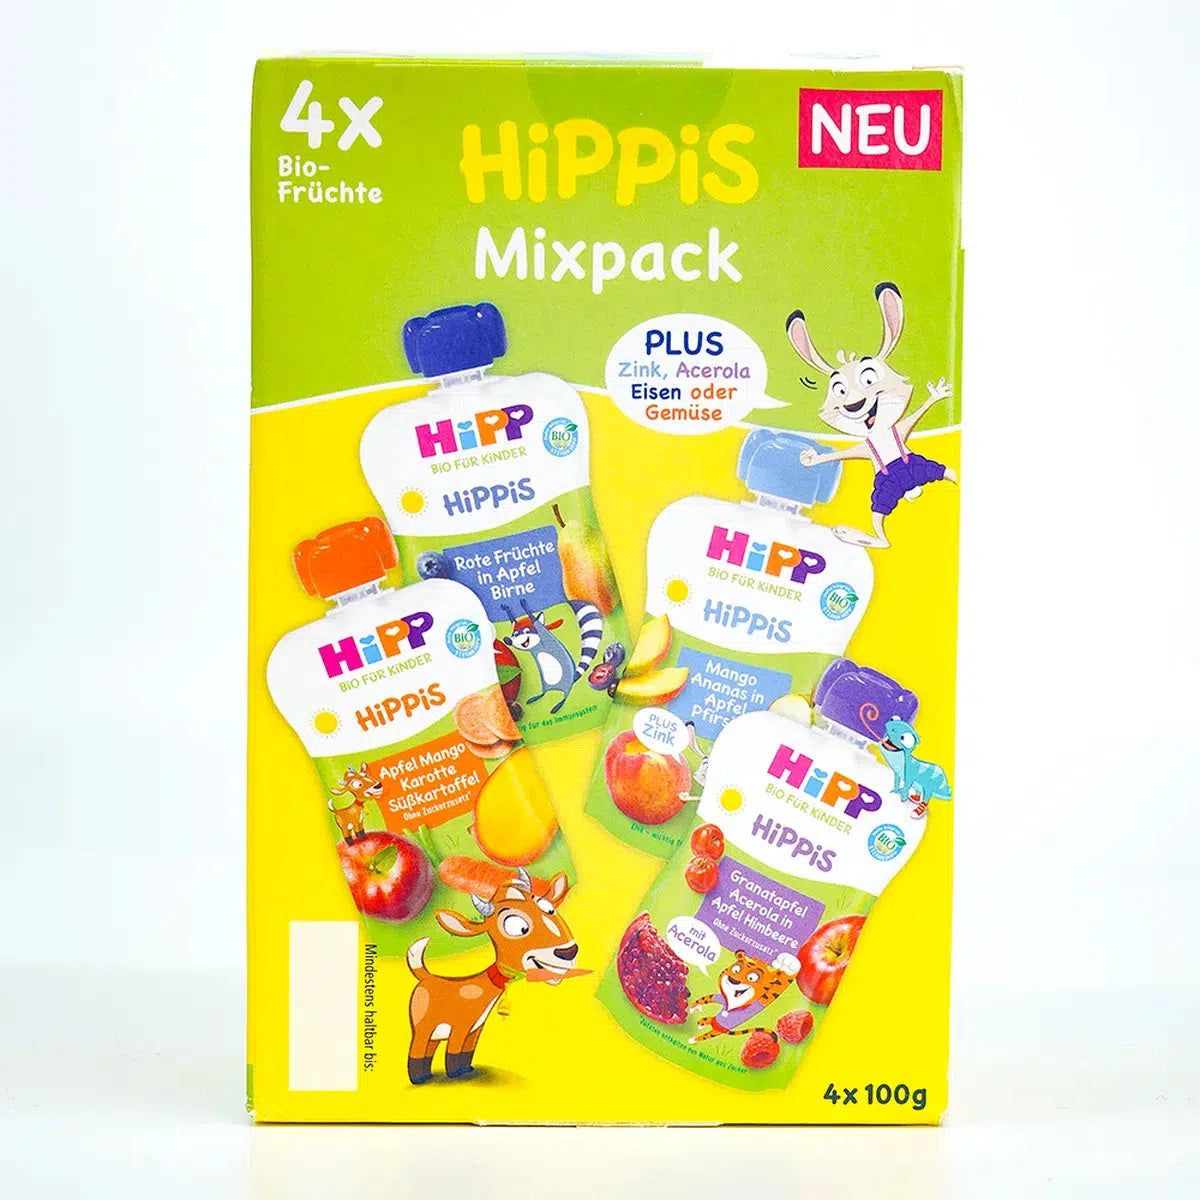 HiPP Fruit Pouches Hippis Mixpack (12+ Months) - 4 Pouches